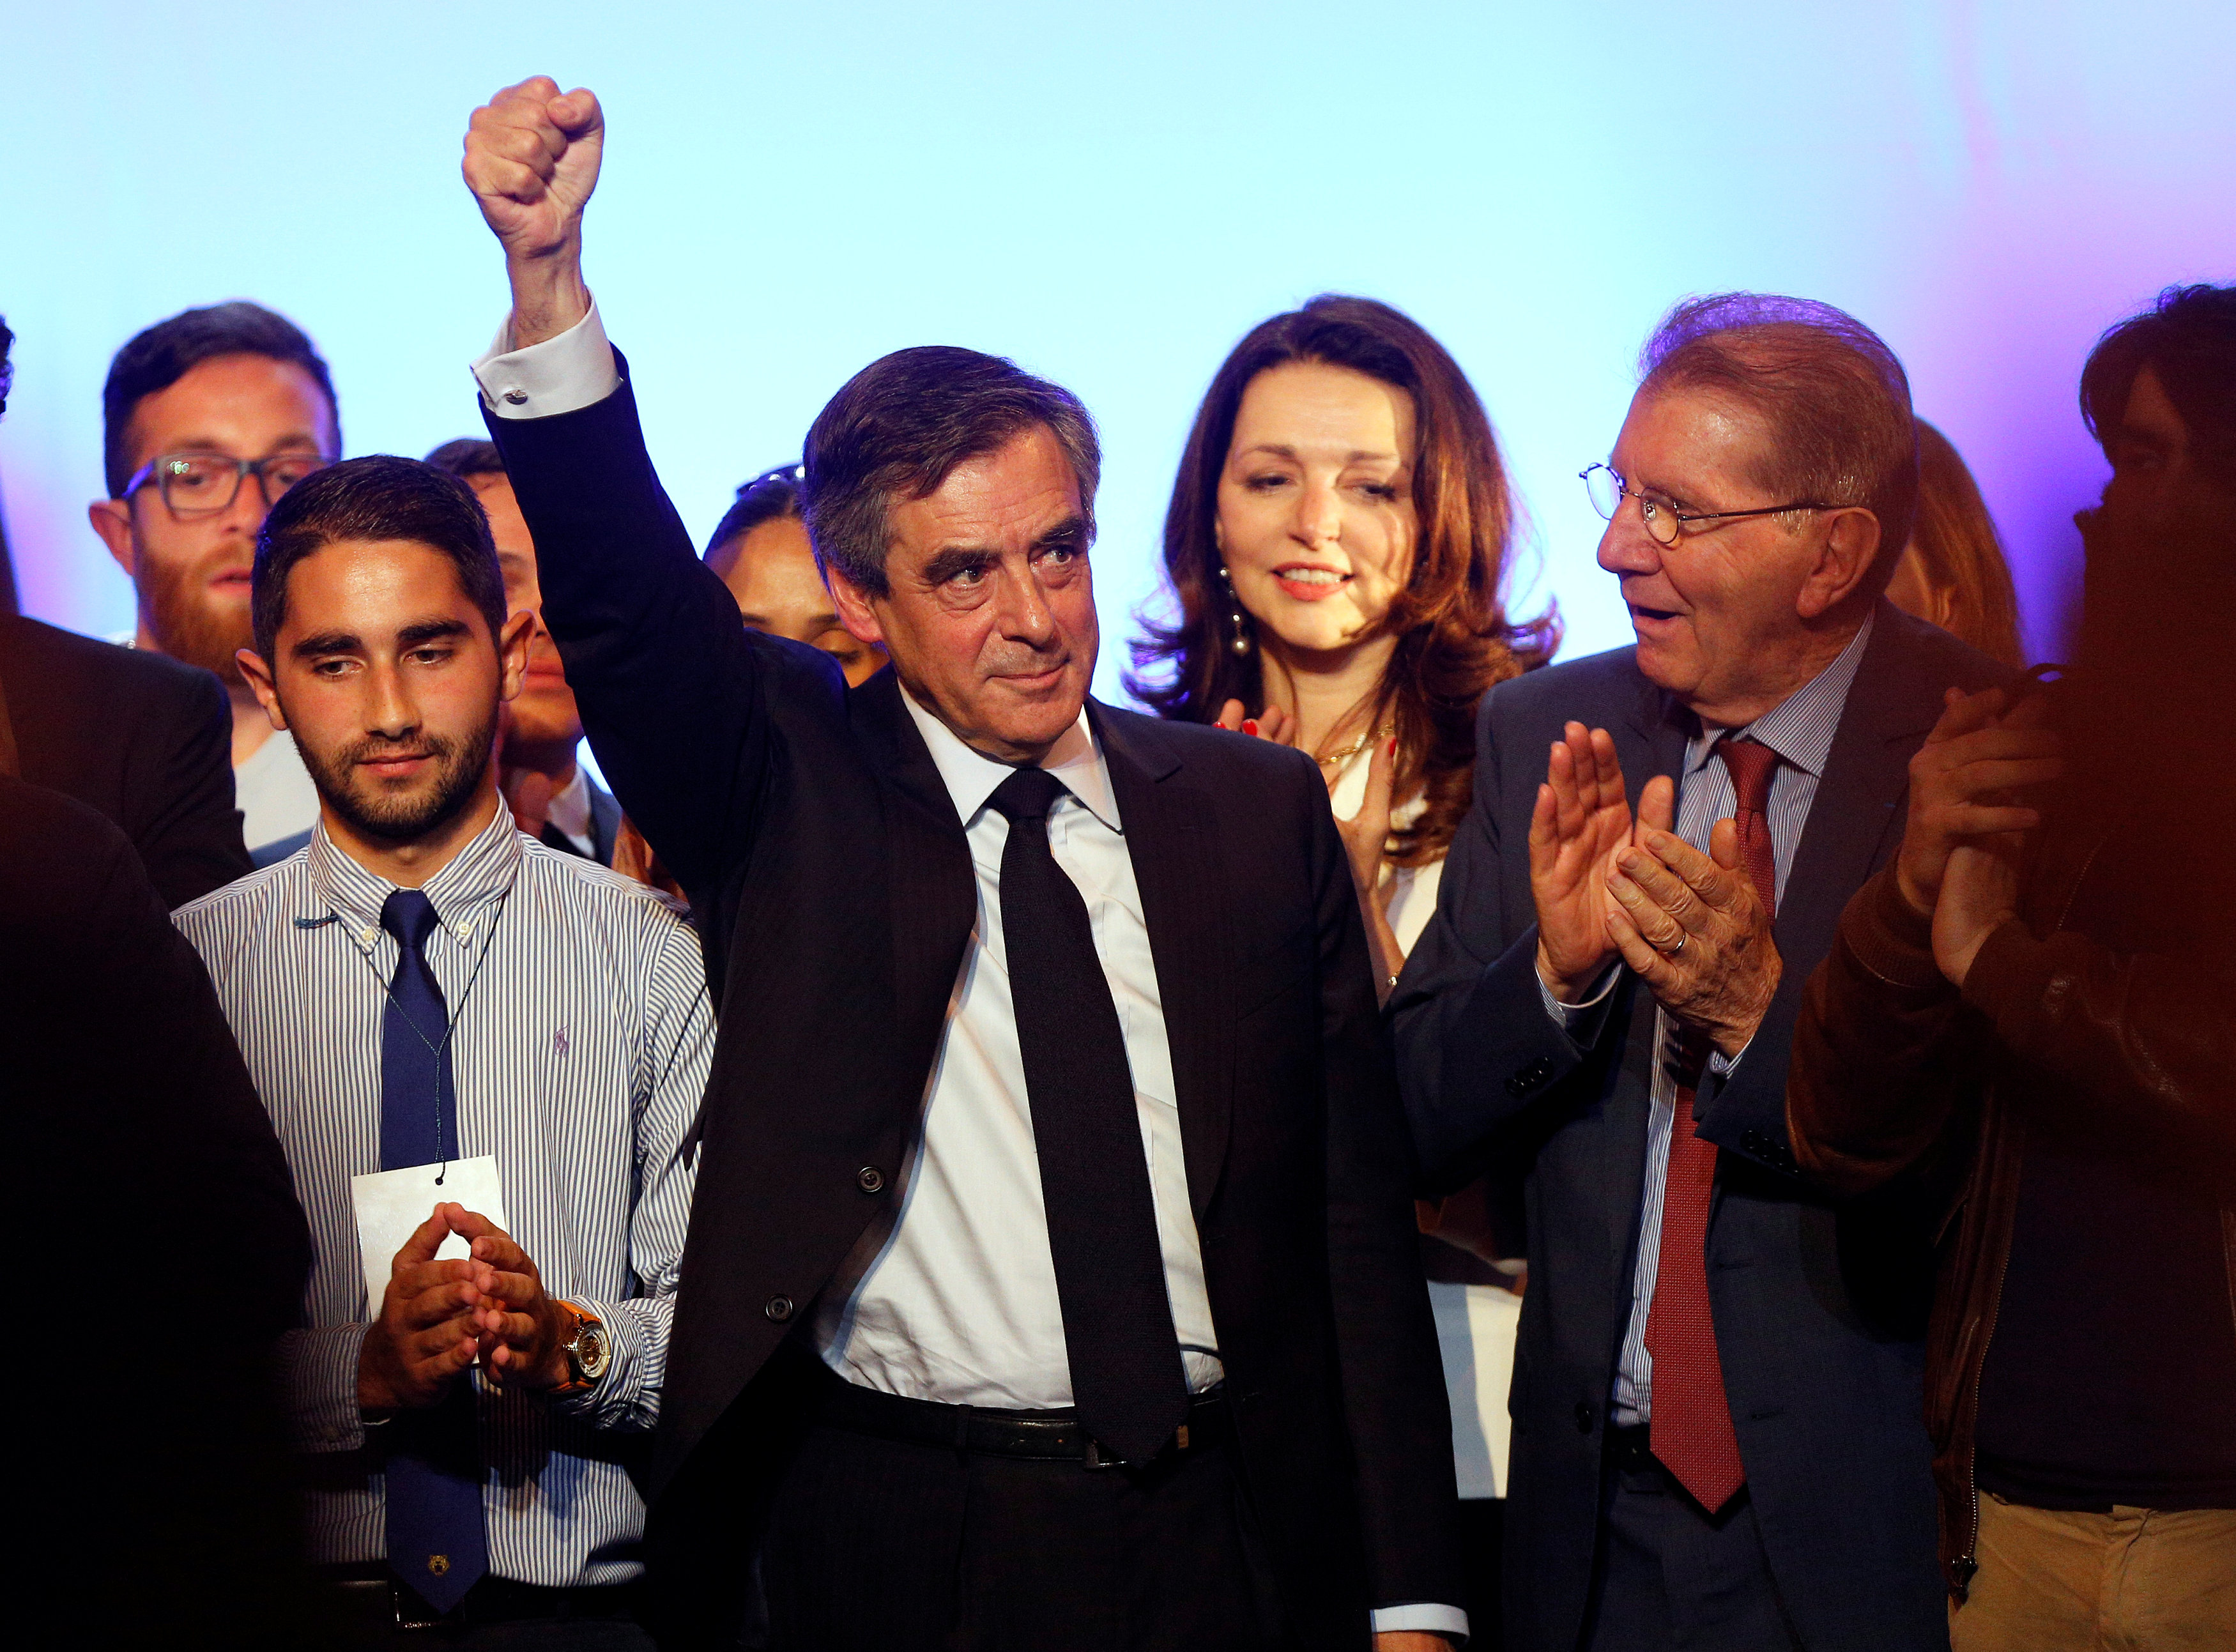 فرانسوا فيون المرشح فى انتخابات الرئاسة الفرنسية خلال حملته الانتخابية